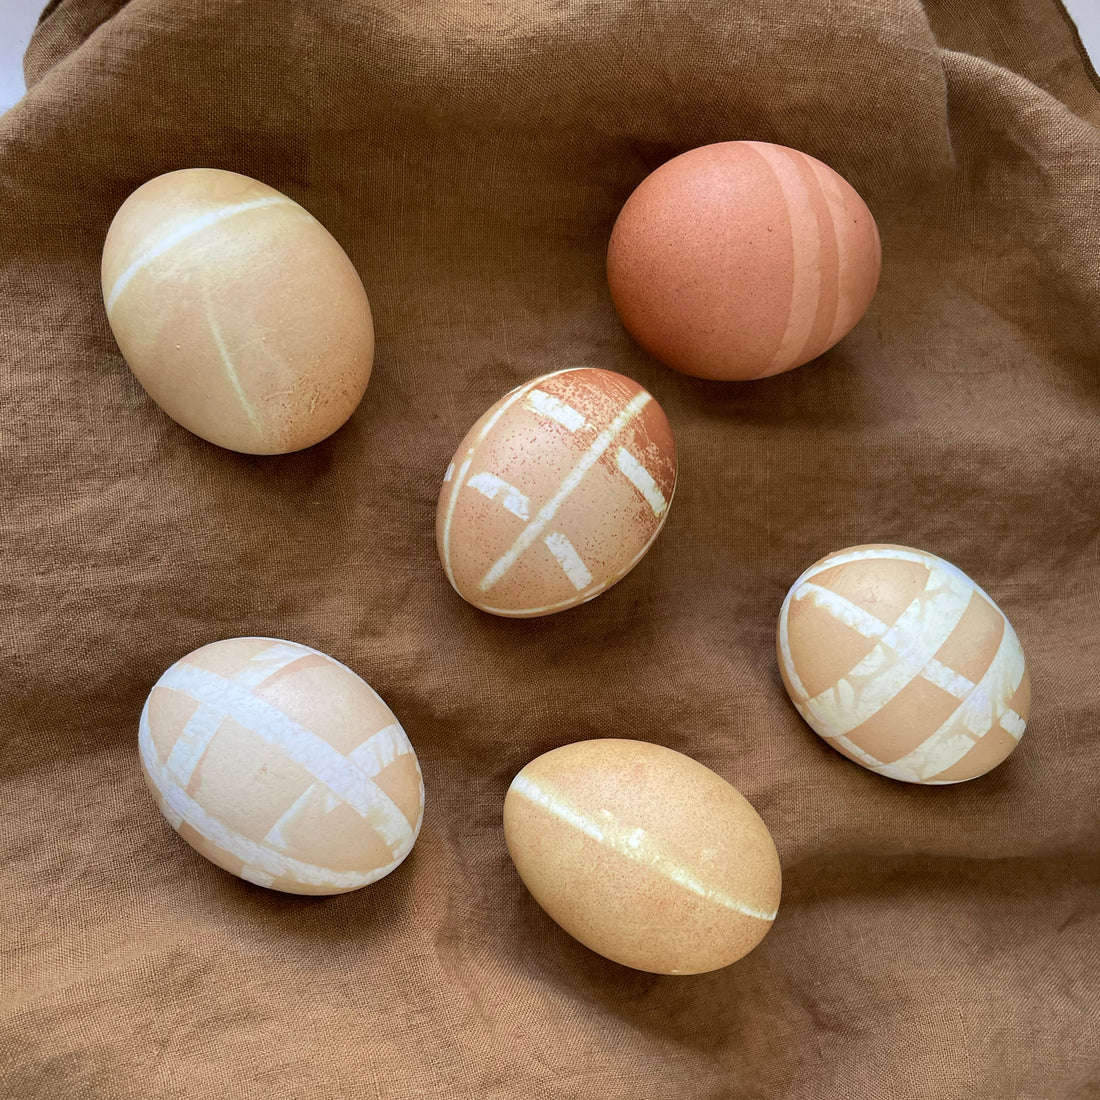 Easter Egg Designs Freebies Wee Gallery   